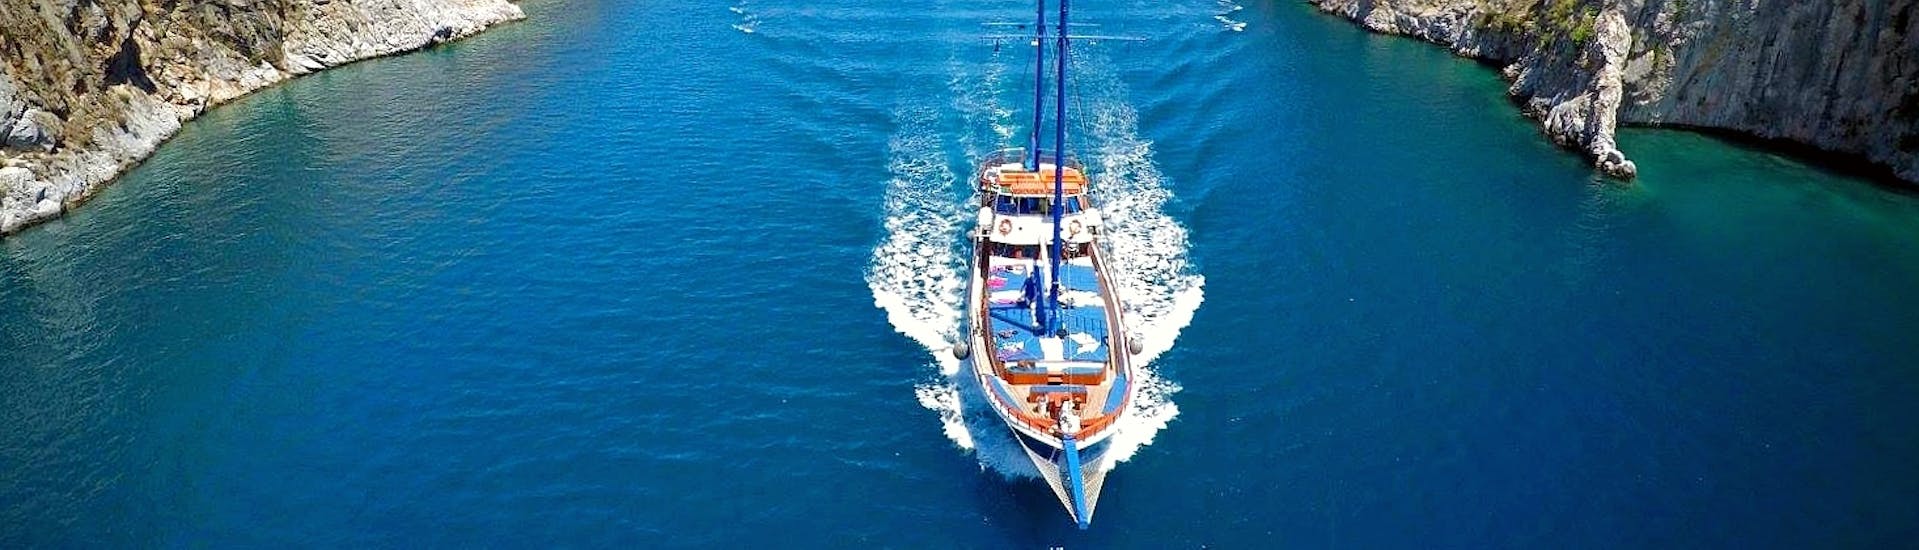 Un élégant voilier naviguant rapidement sur les eaux bleues autour des îles du Dodécanèse lors d'une balade en voilier vers les îles de Kalymnos, Plati & Pserimos avec Odyssey Boat.